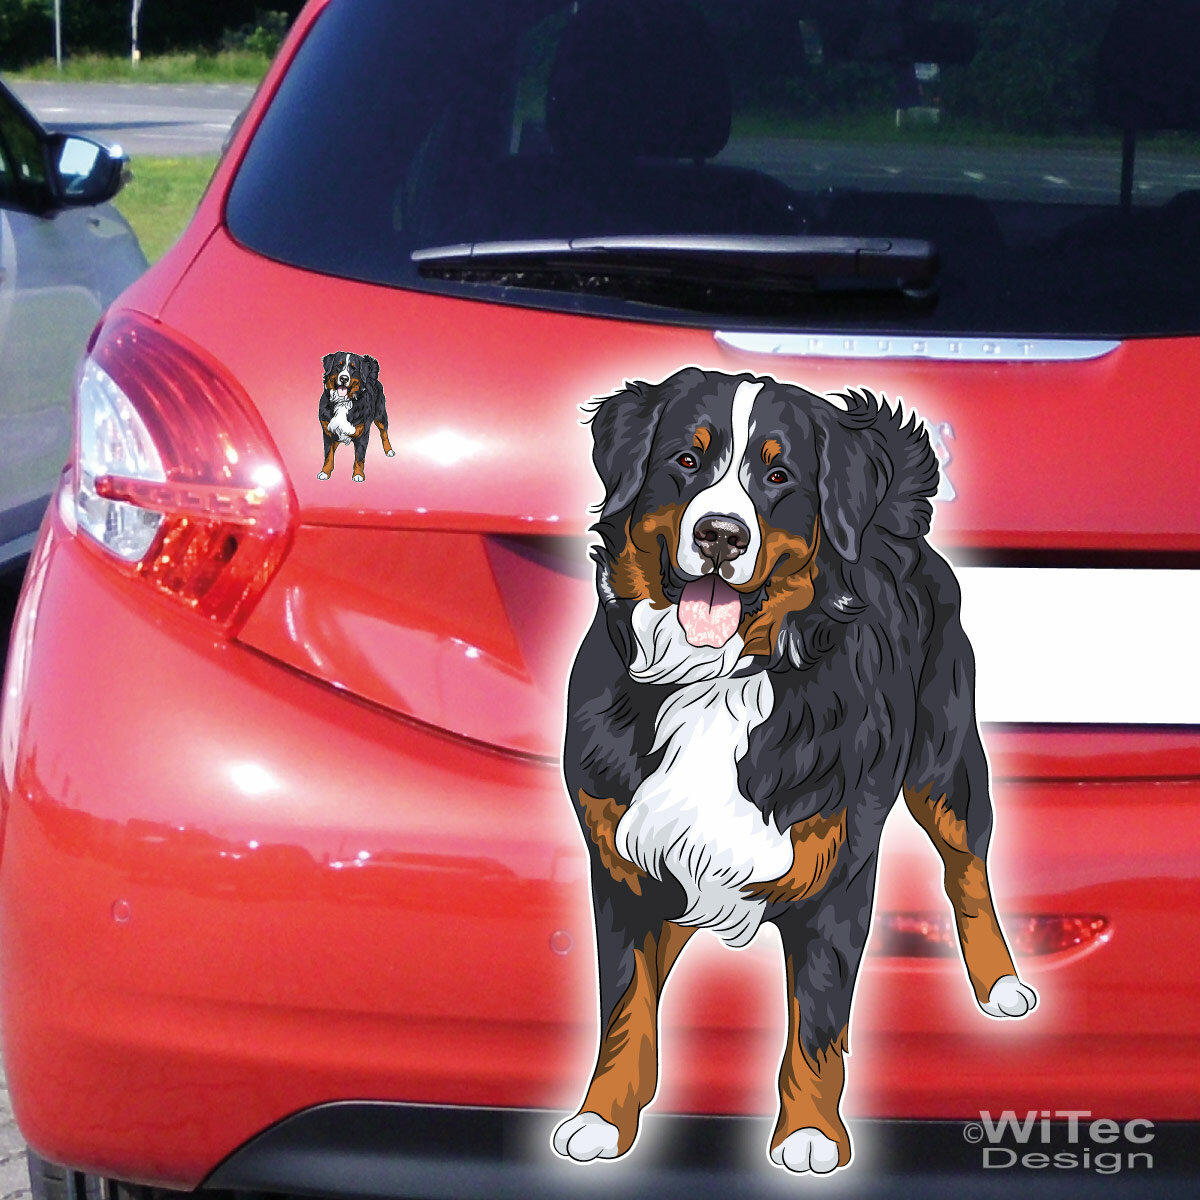 Stickeraffe Windhund Hund Dog Animal Tier Auto Aufkleber Sticker